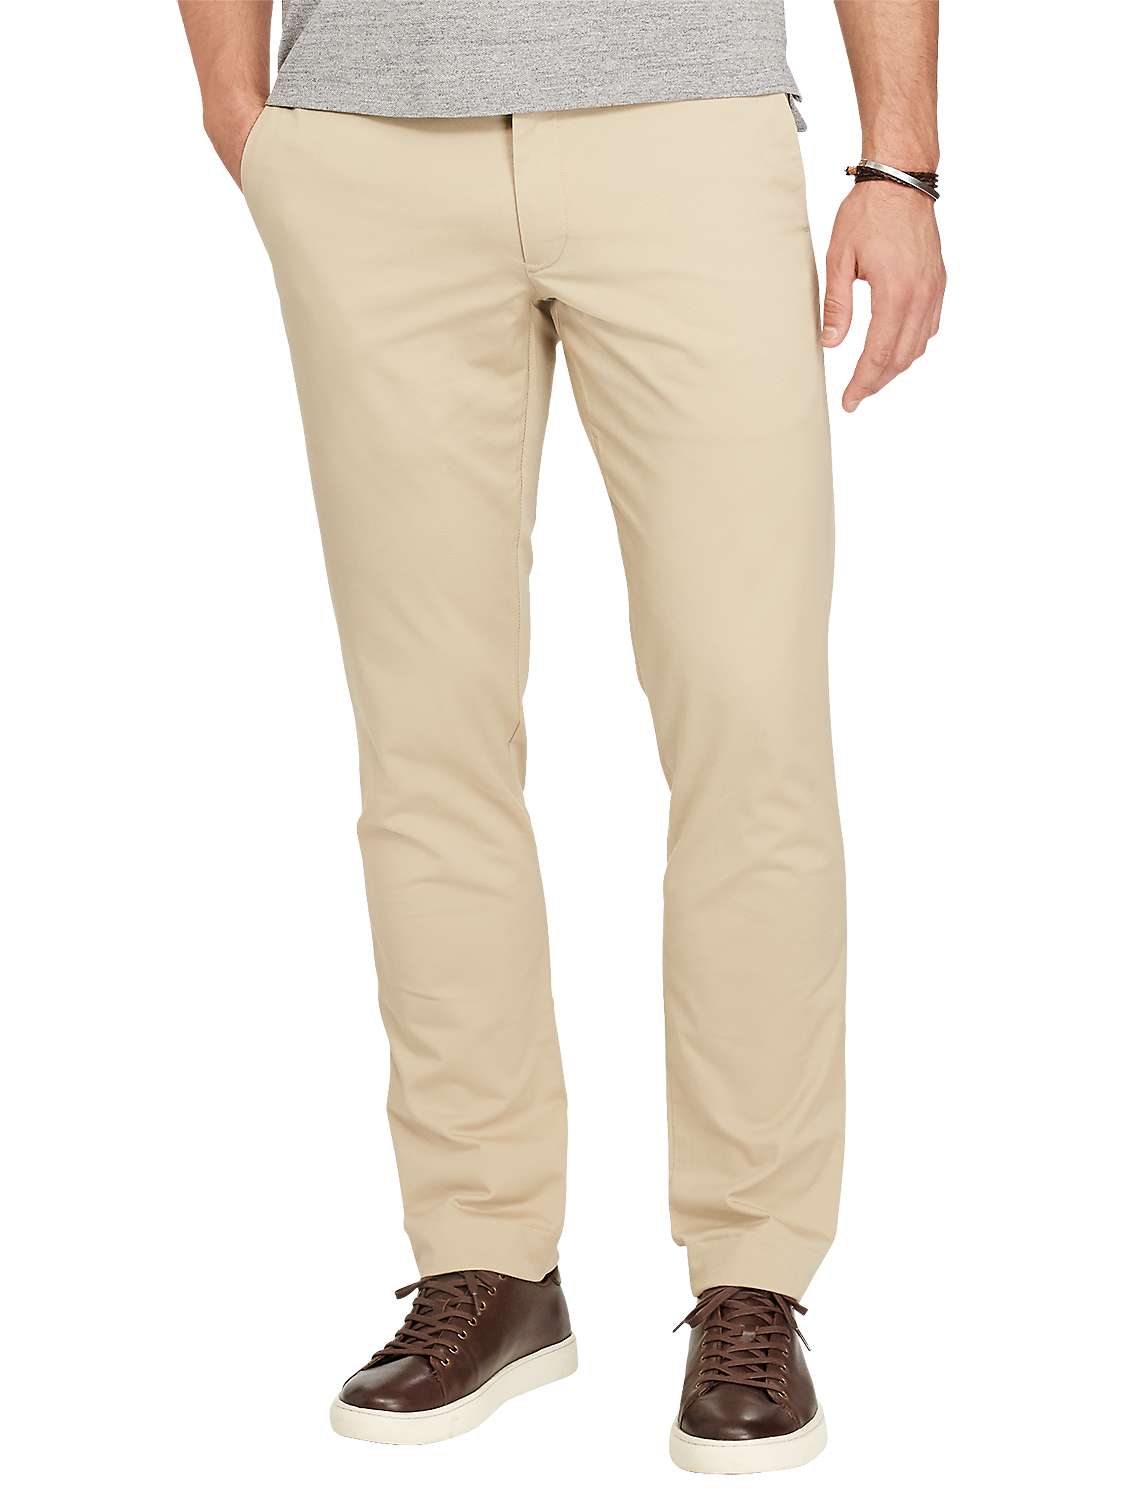 Beige discount 97% MEN FASHION Trousers Corduroy Polo Ralph Lauren slacks 